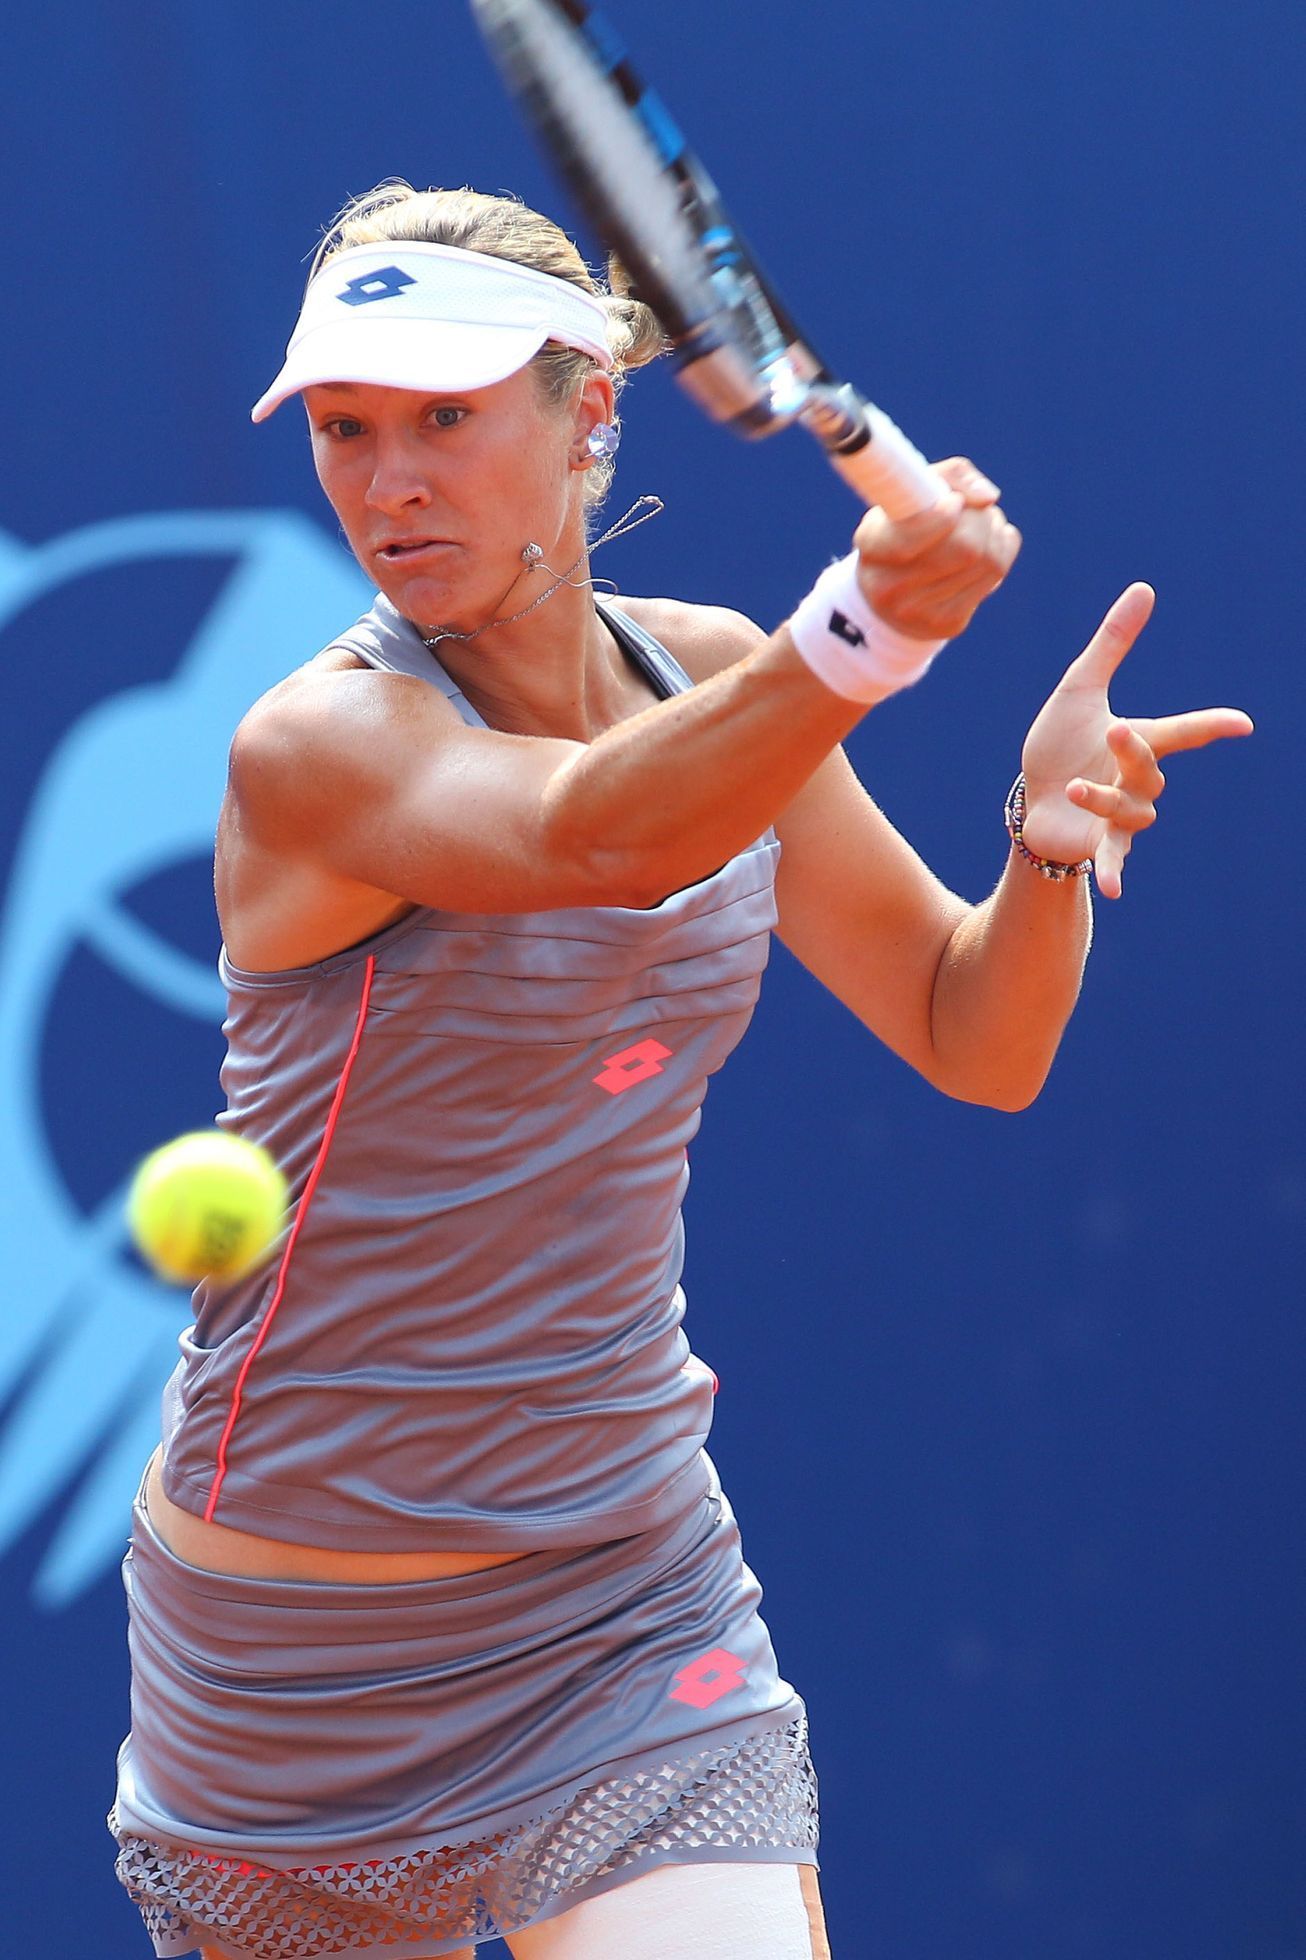 Prague Open 2015: Denisa Allertová